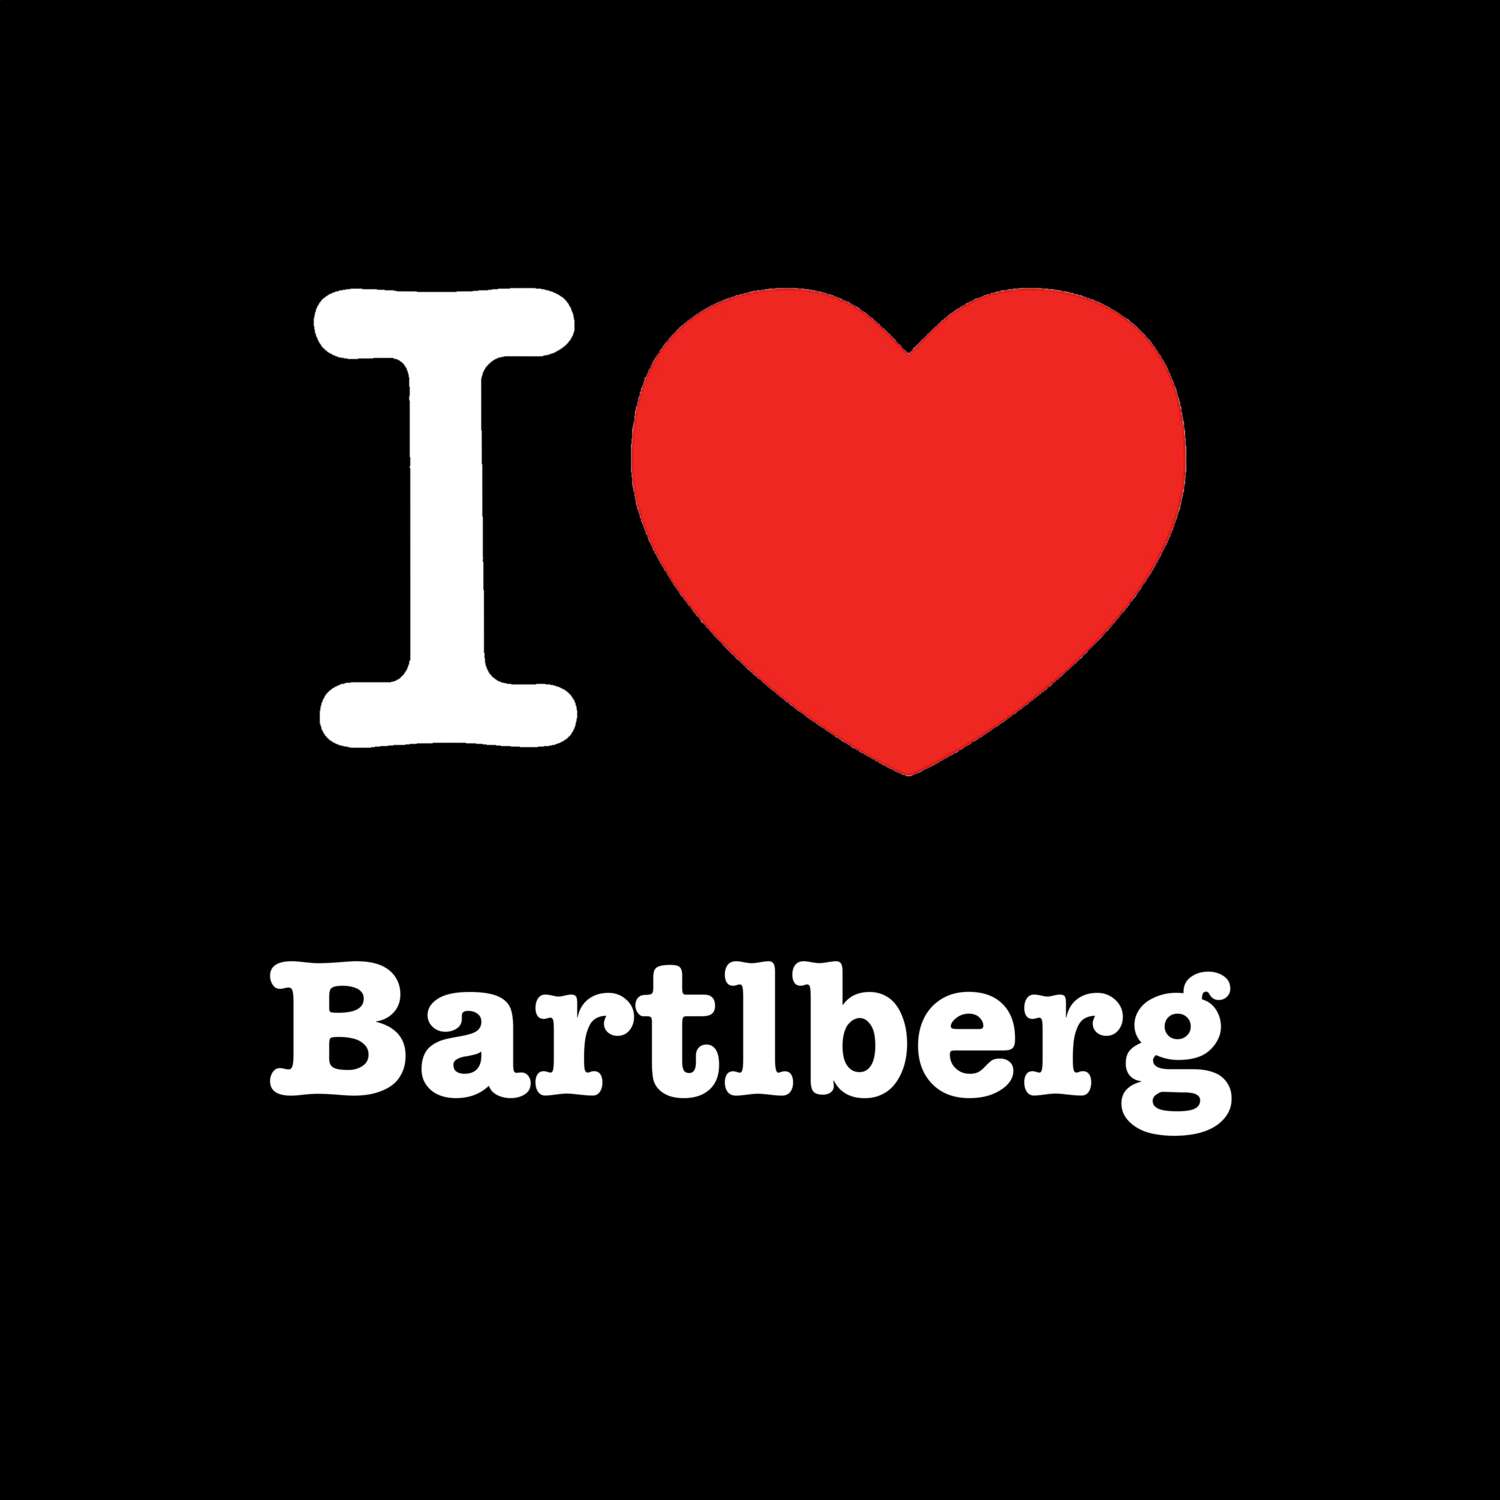 Bartlberg T-Shirt »I love«